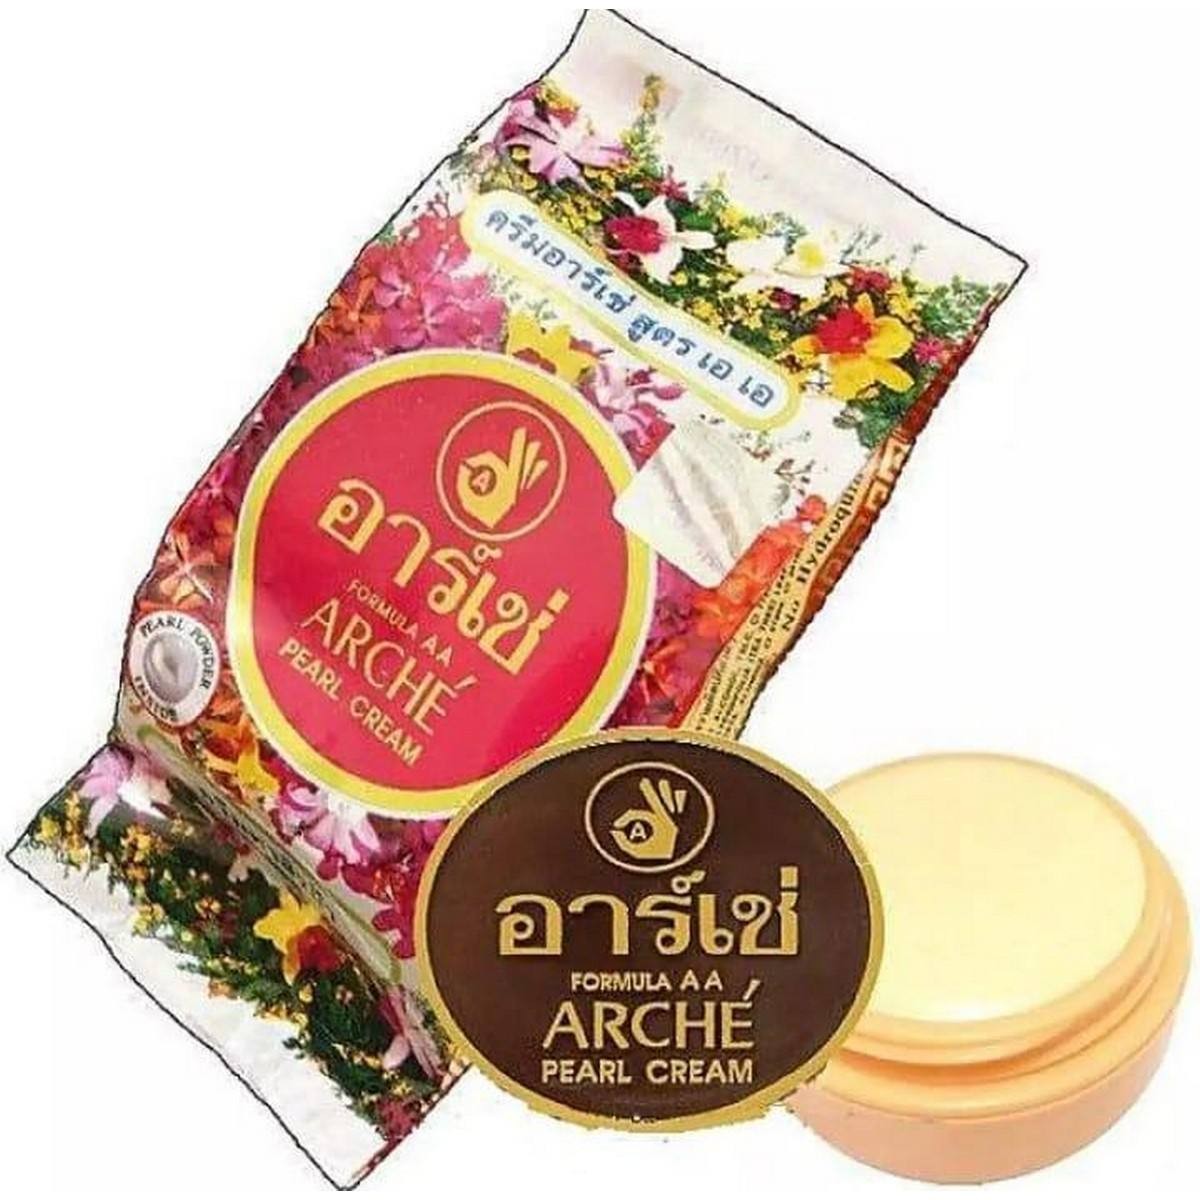 Arche Pearl Night Cream